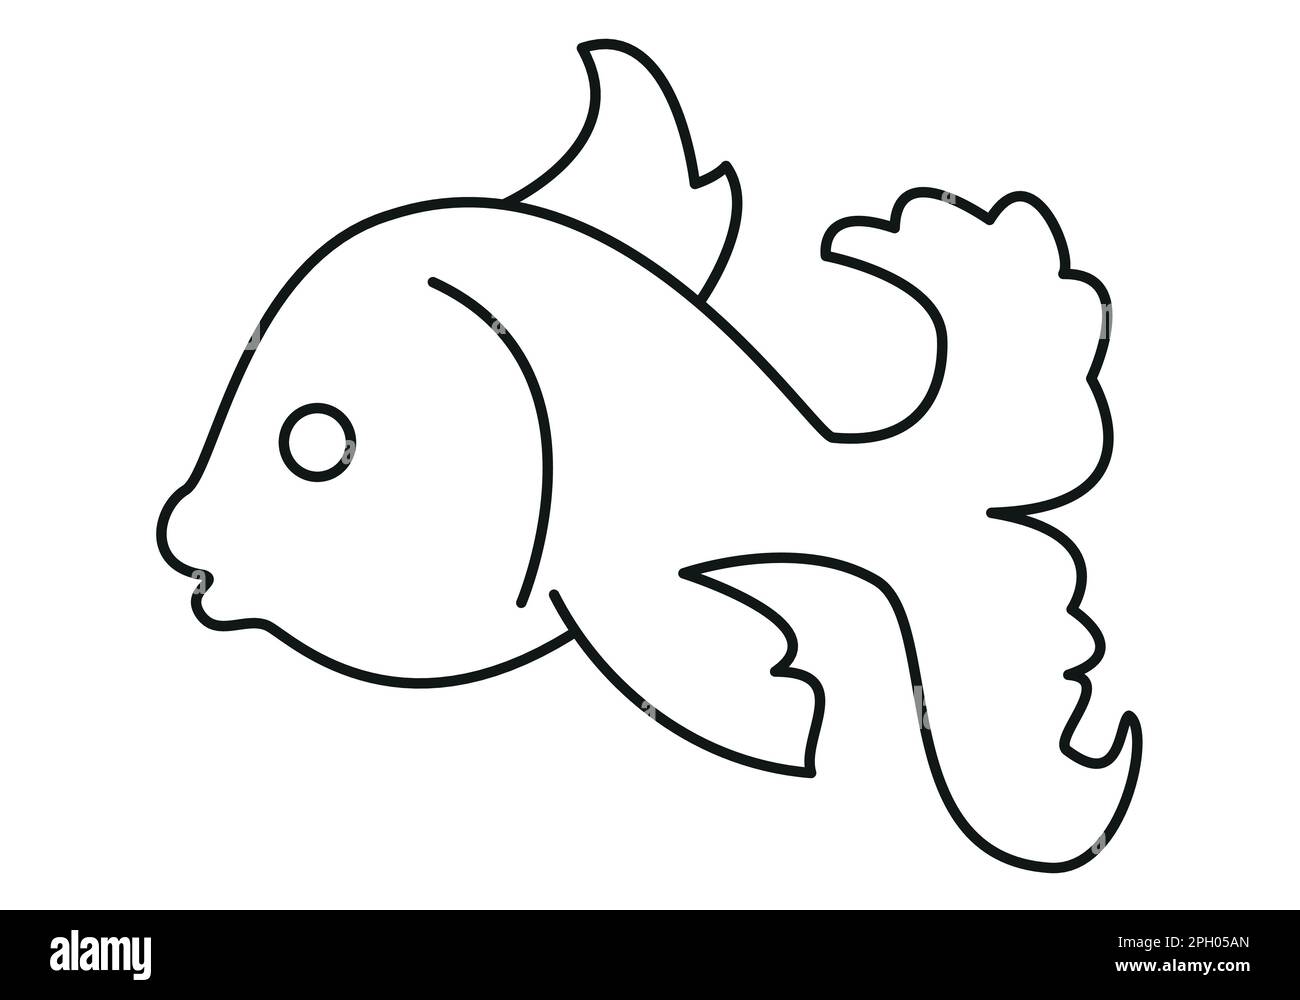 aquarium poisson - dessin animé dessin schématique simple dessin vectoriel noir et blanc illustration isolée sur blanc Illustration de Vecteur